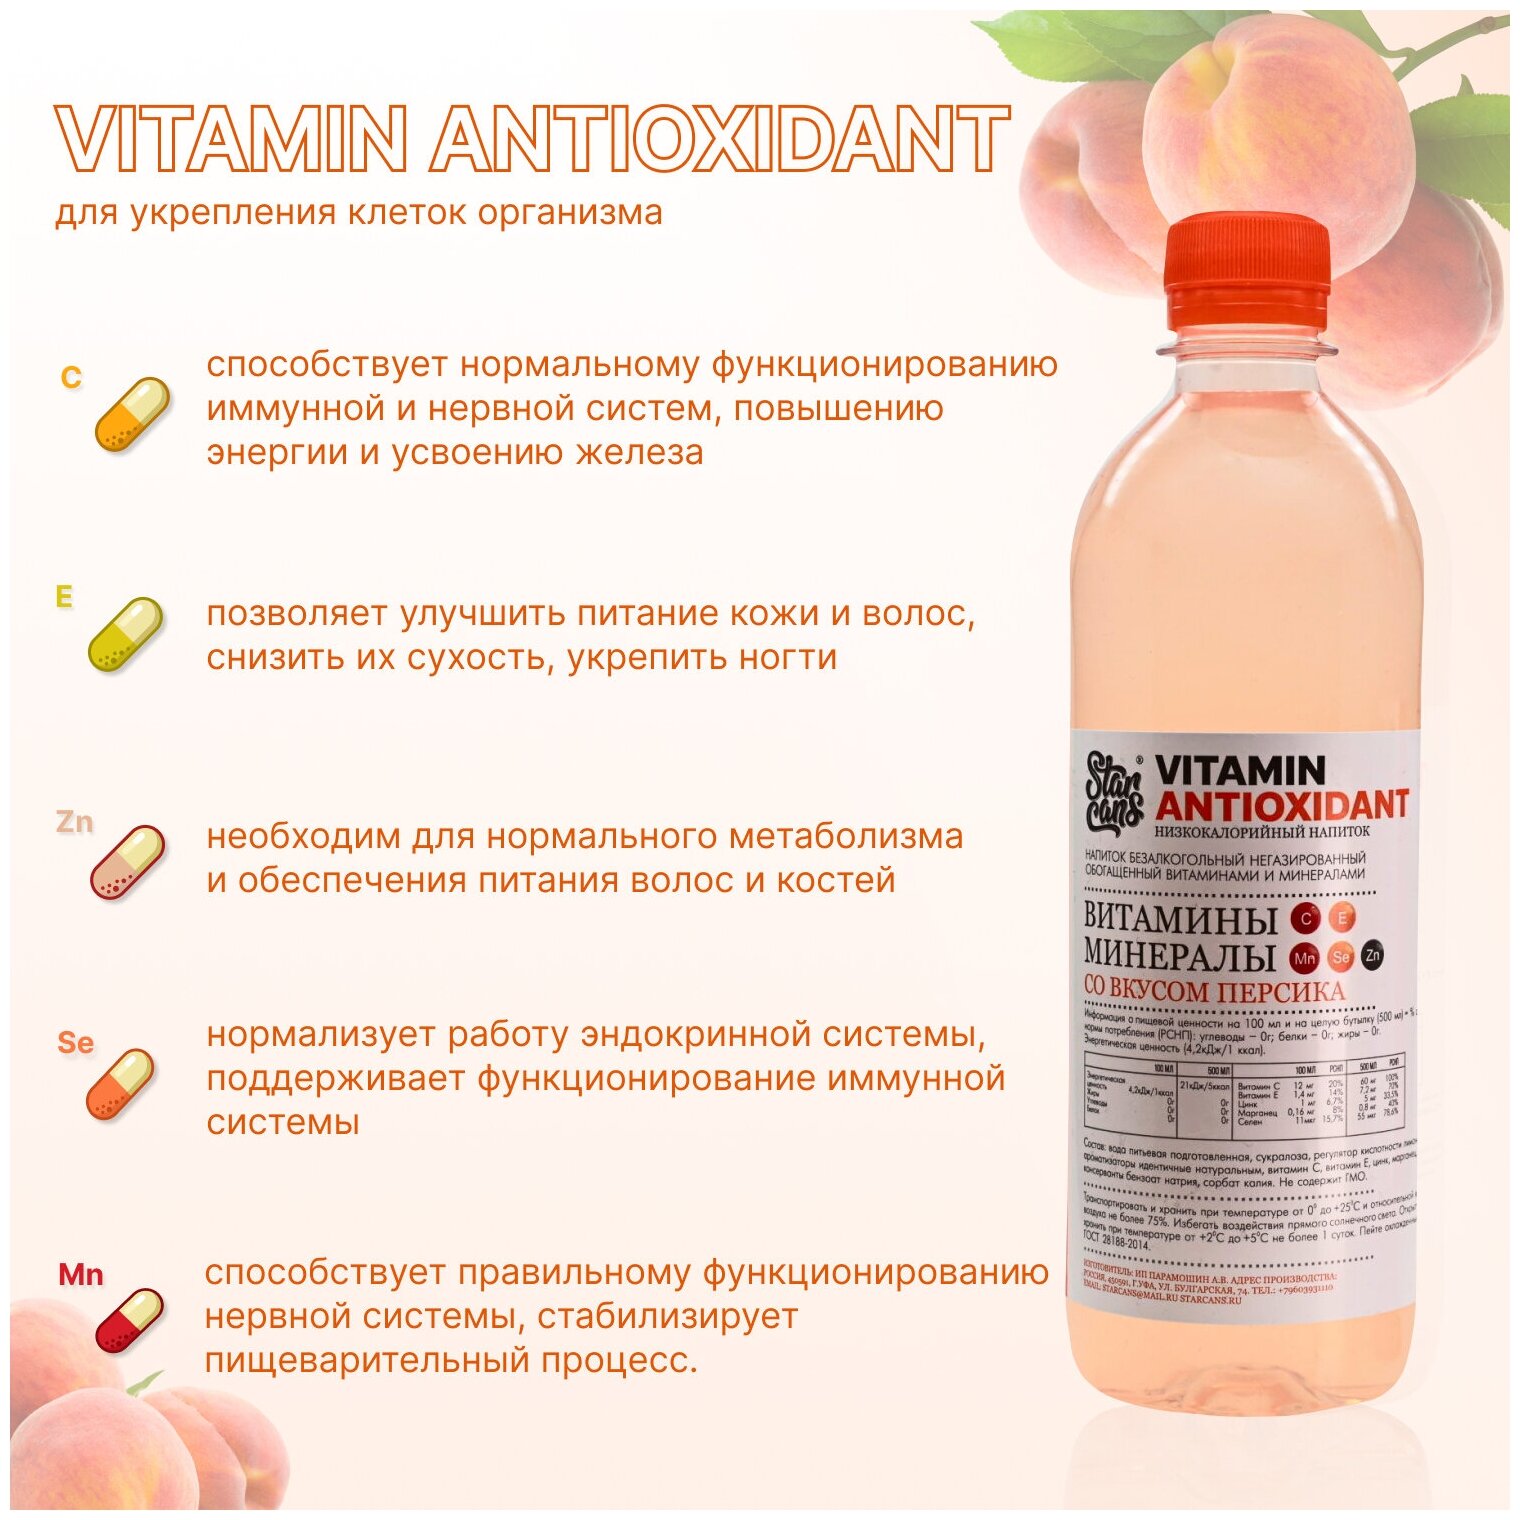 Vitamin ANTIOXIDANT Напиток витаминизированный со вкусом Персика негазированный низкокалорийный 12 шт по 500 мл - фотография № 2